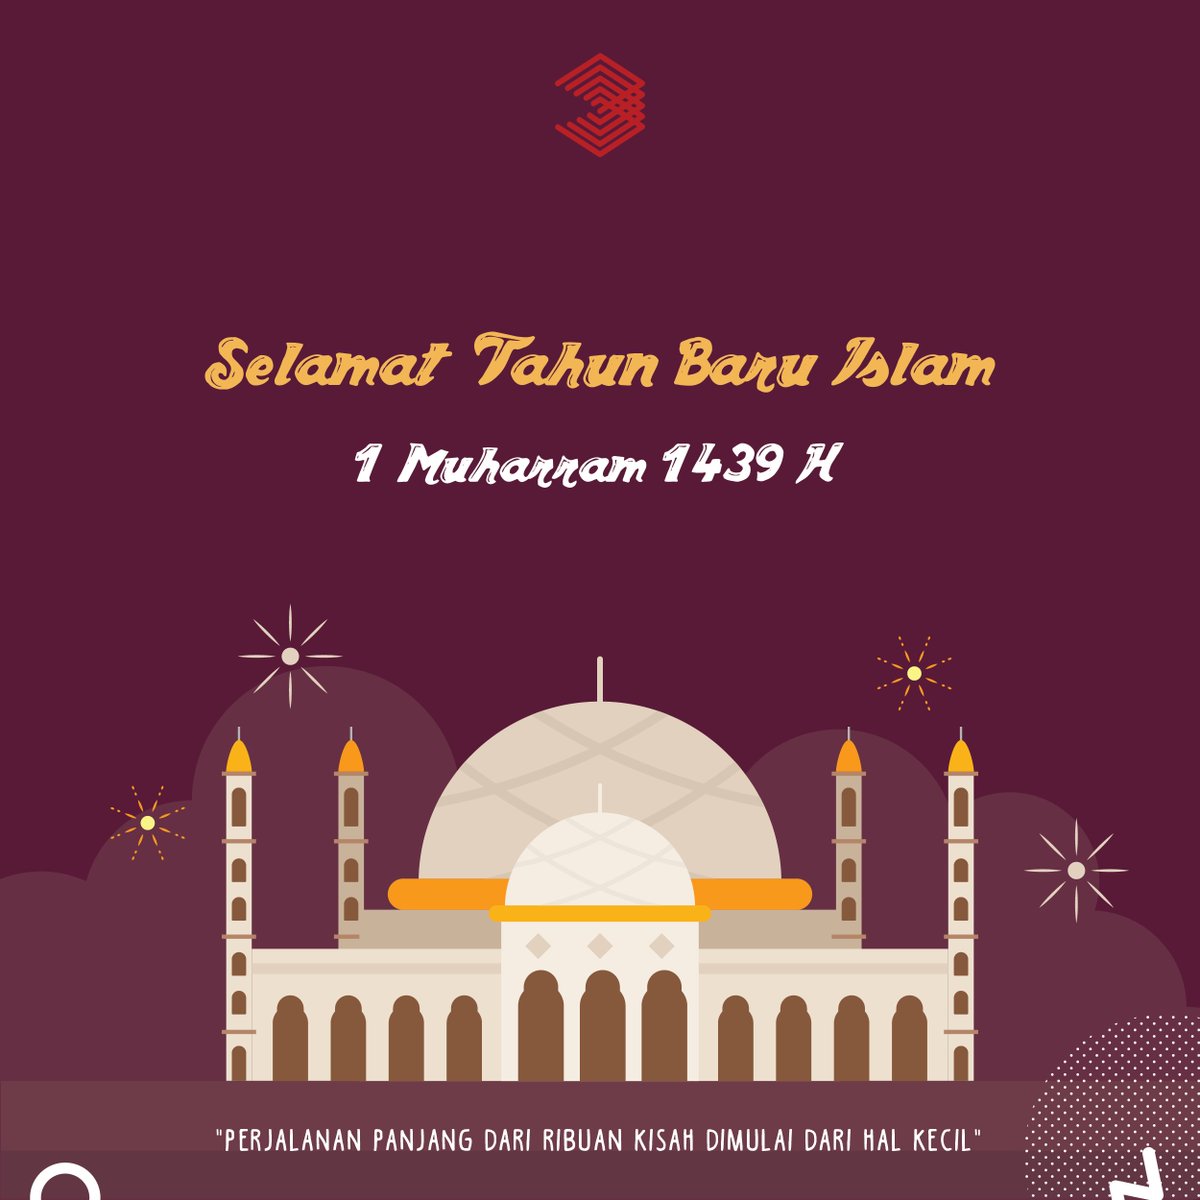 Indonesia Data MARS On Twitter Selamat Tahun Baru Islam 1 Muharram